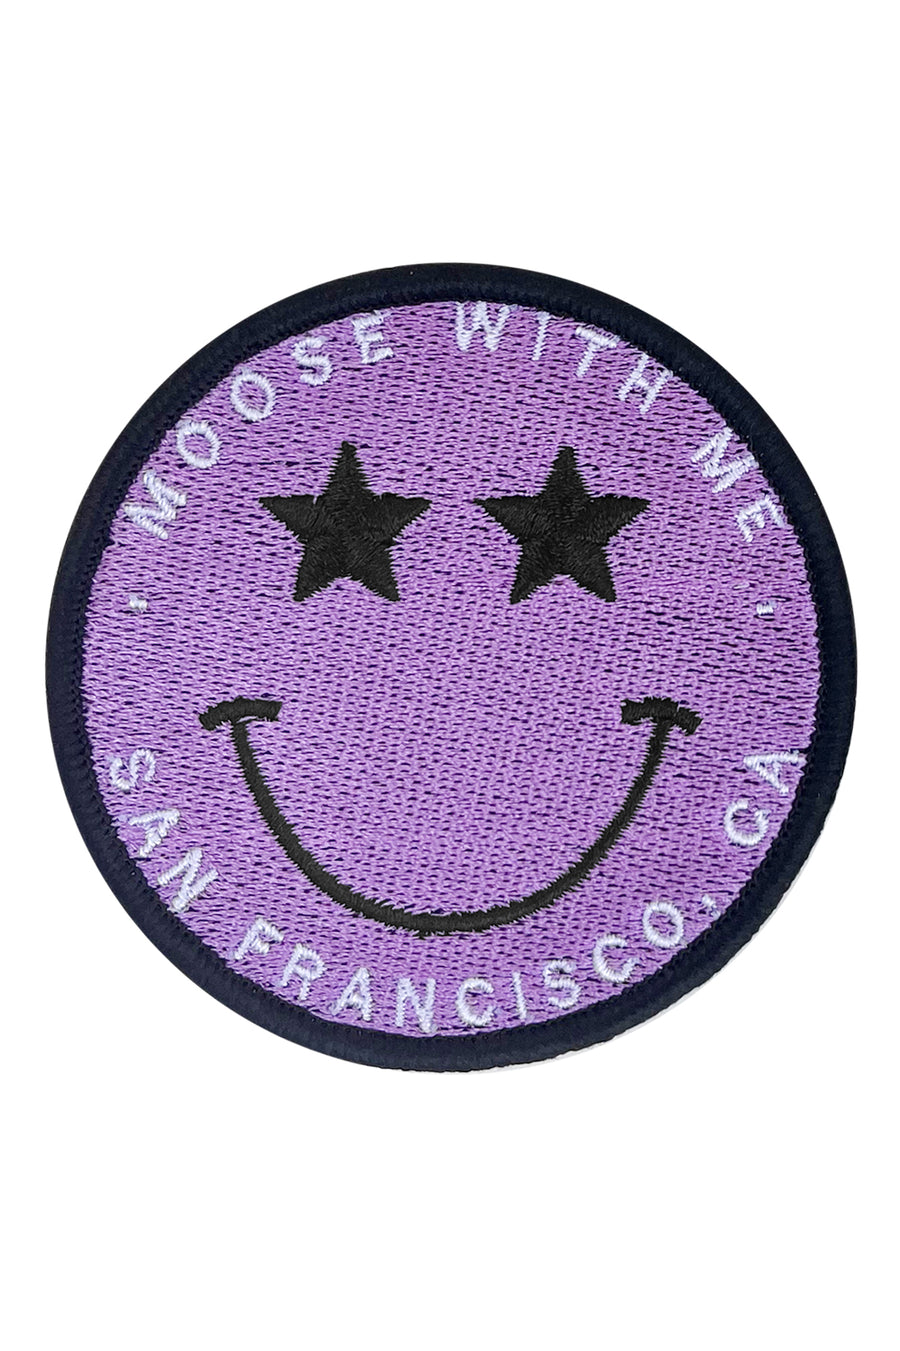 Velcro Patch Star Smiley Face San Francisco California